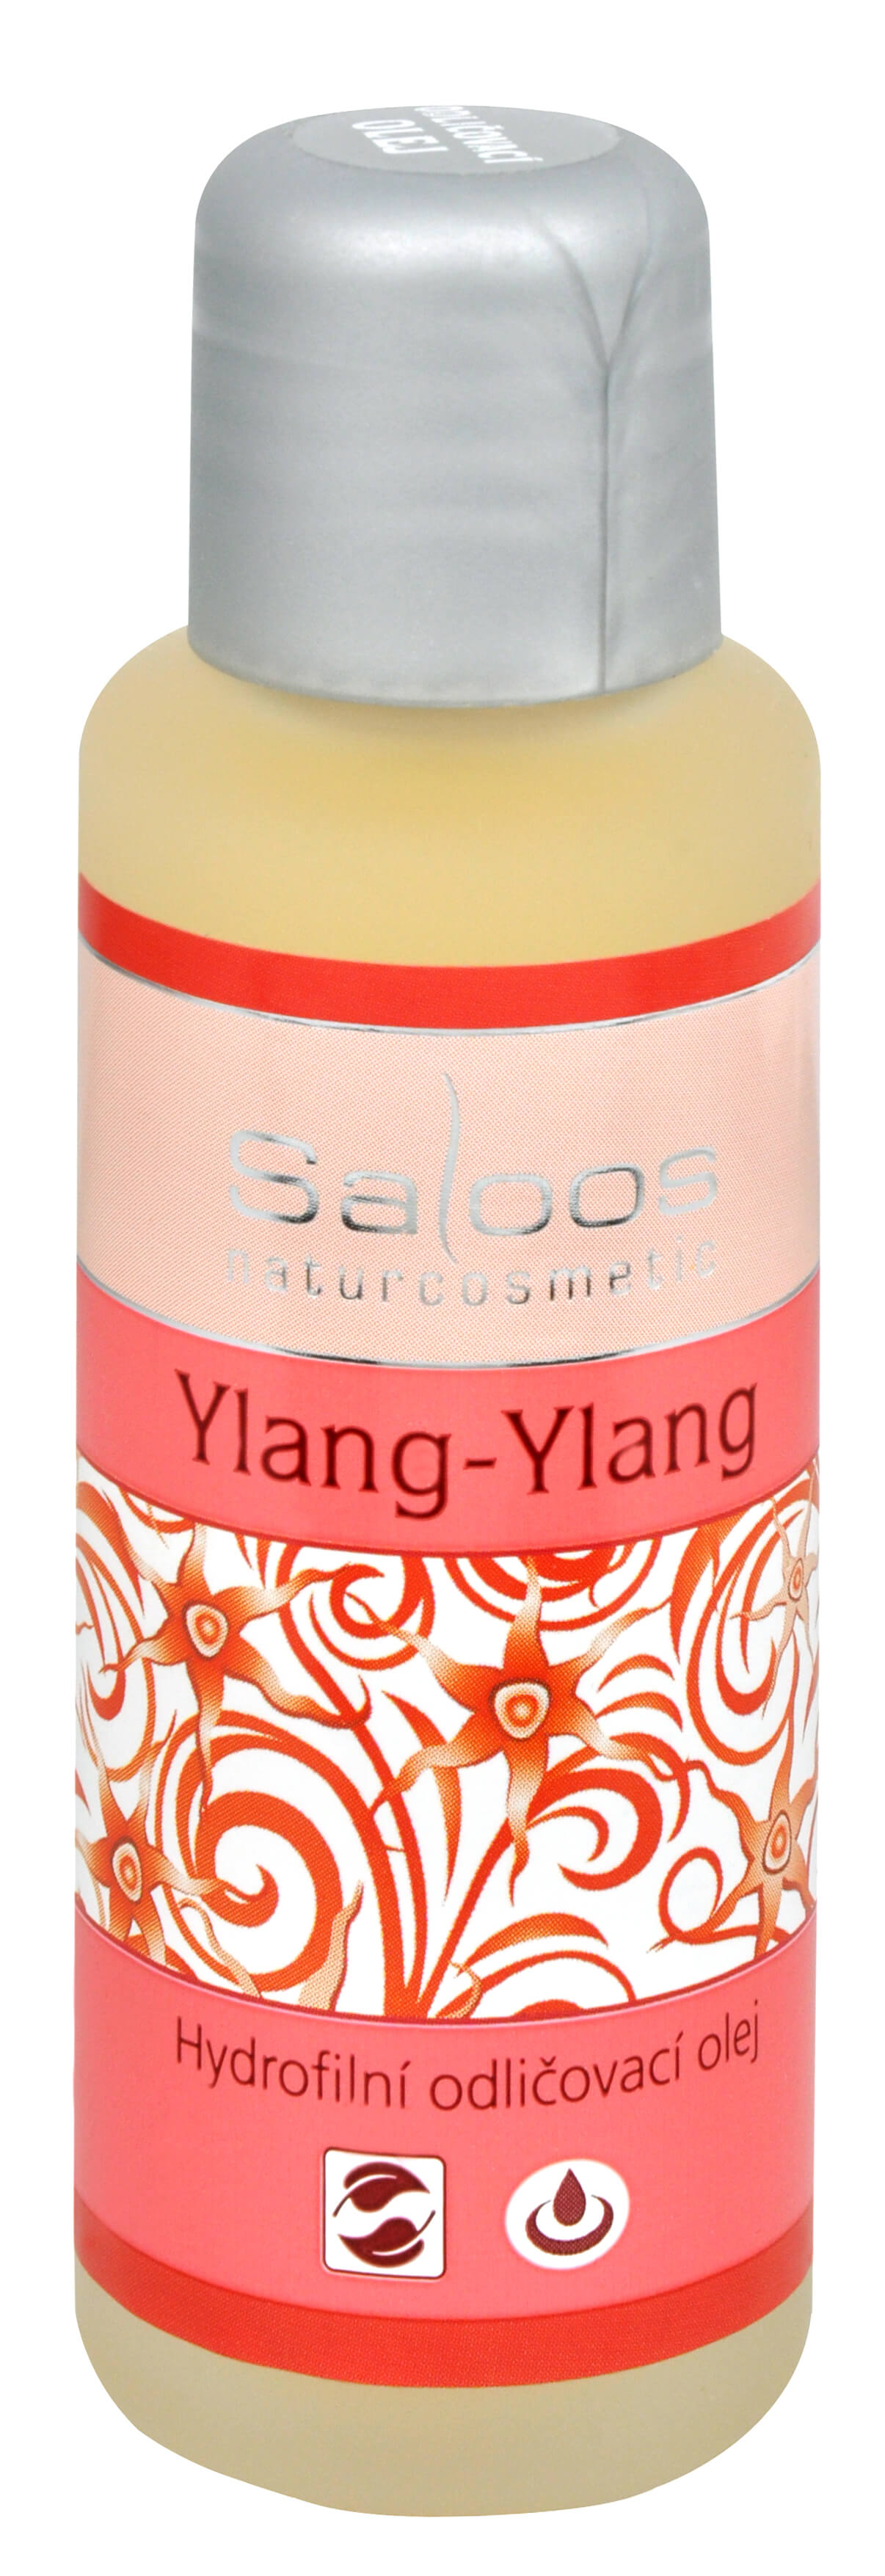 Zobrazit detail výrobku Saloos Hydrofilní odličovací olej - Ylang-Ylang 50 ml